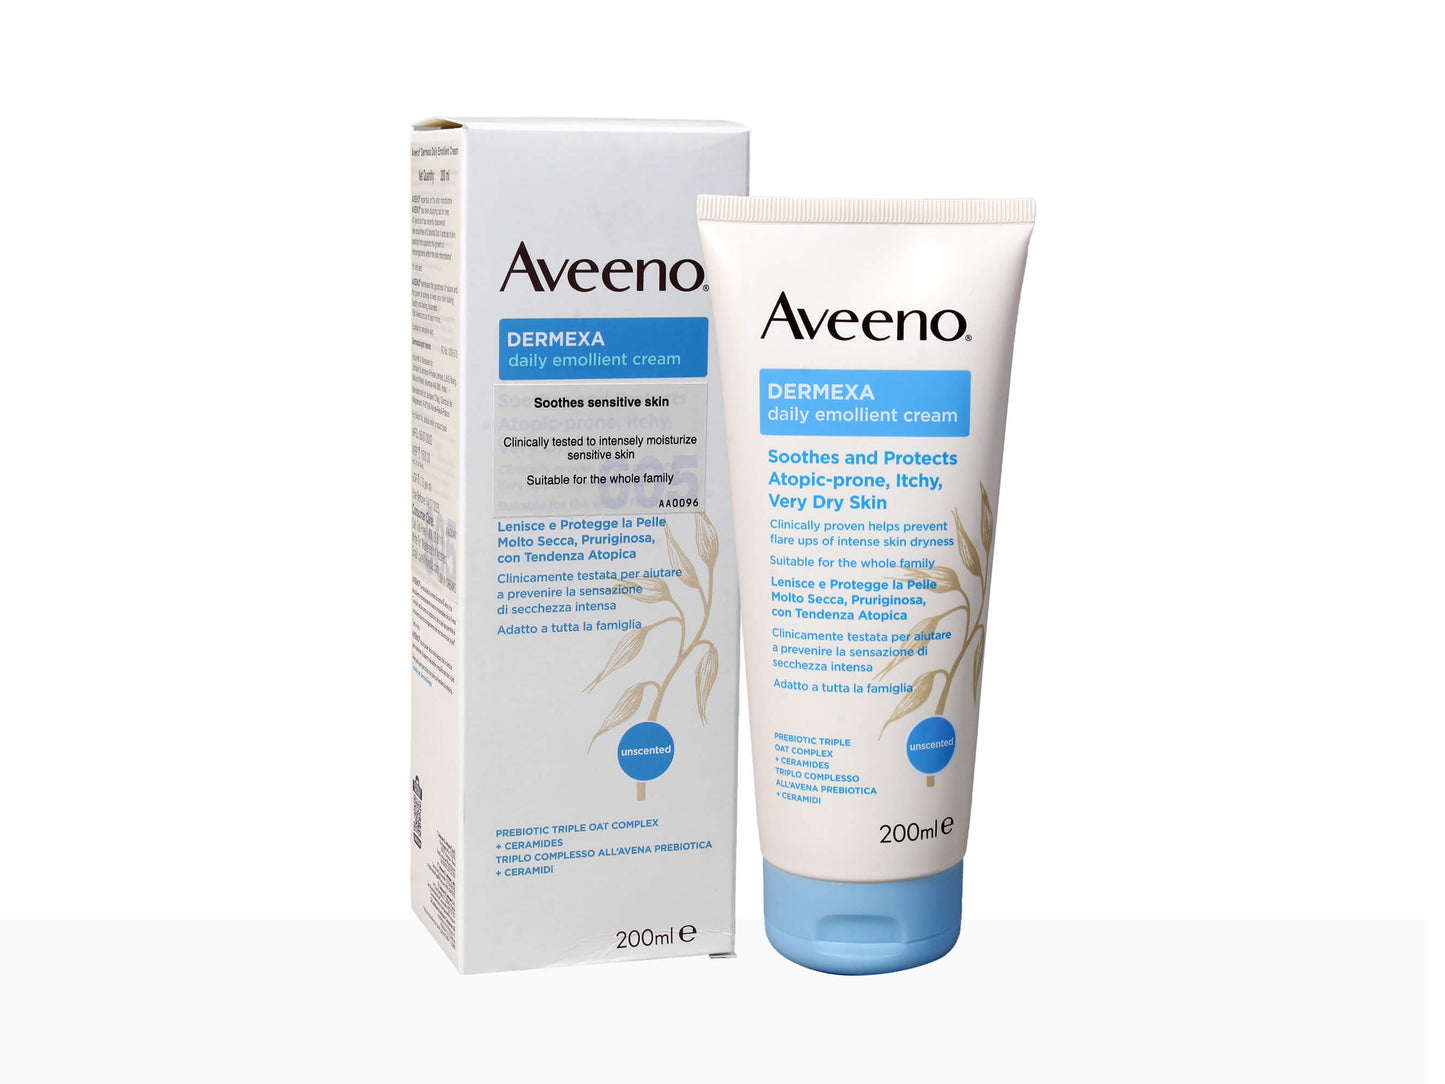 Aveeno Dermexa Daily Emollient Cream, 200ml